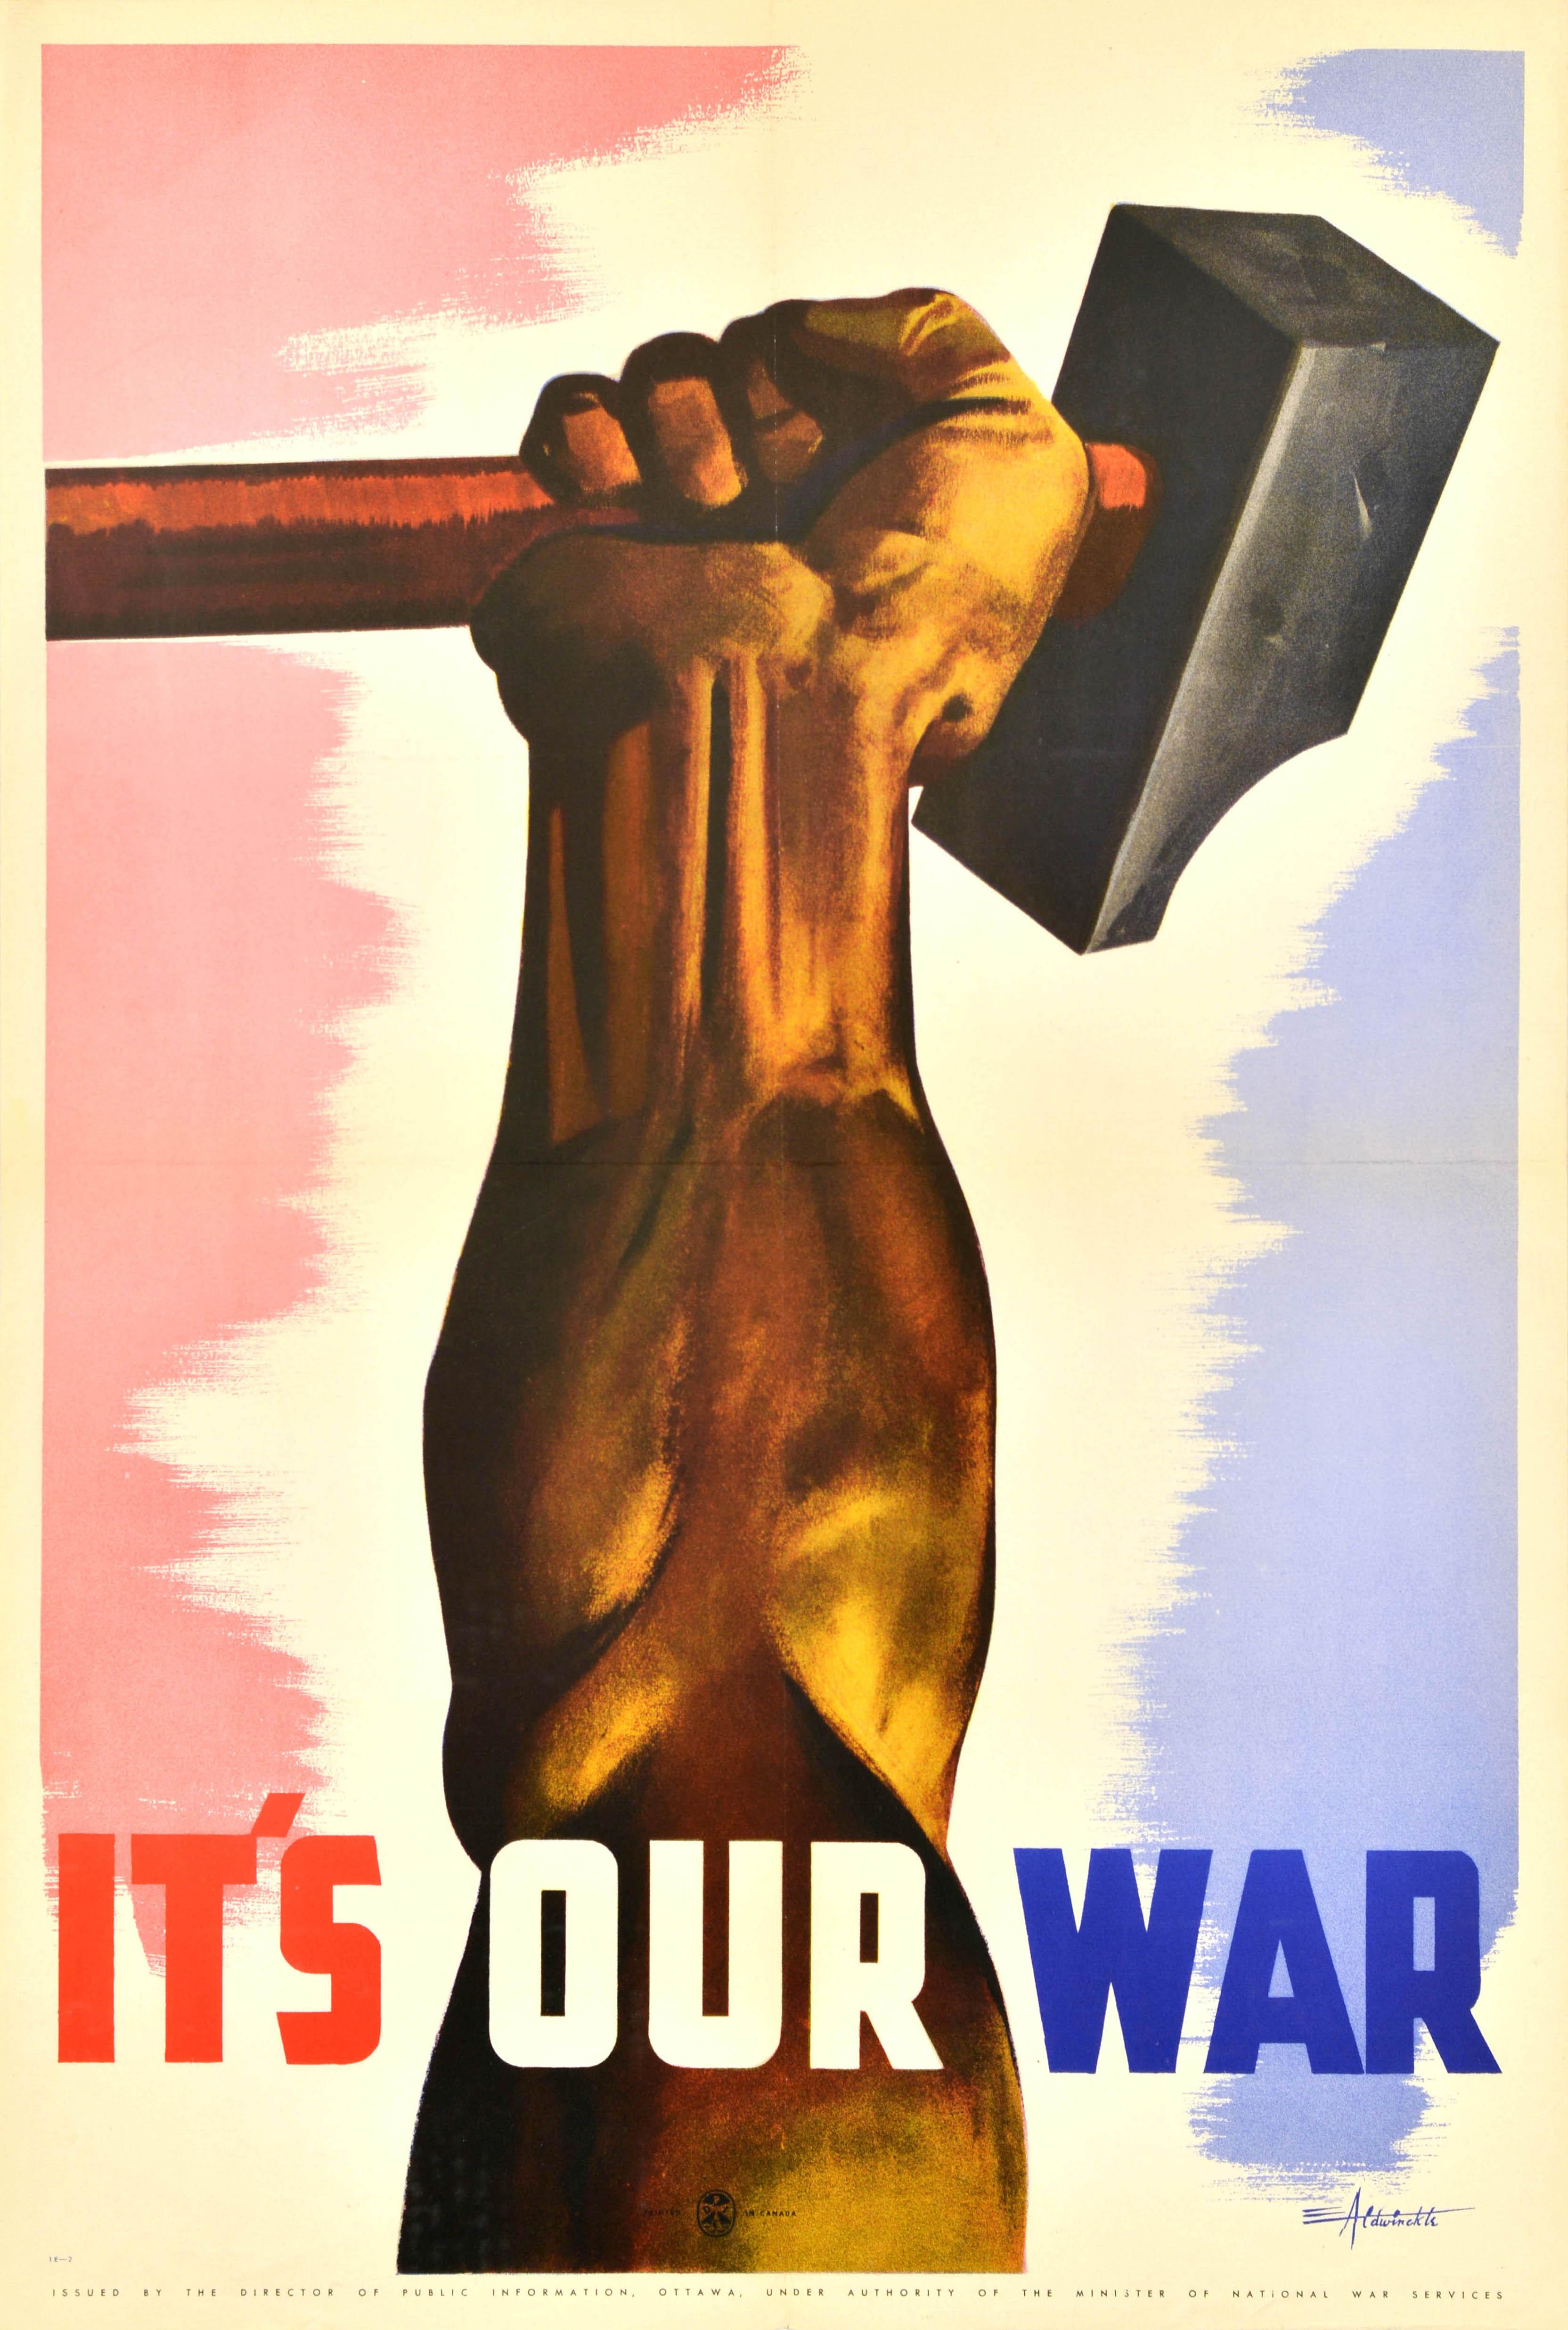 Originalplakat aus dem Zweiten Weltkrieg mit einem dynamischen Entwurf von Eric Aldwinckle (1901-1980), der eine Hand zeigt, die einen Hammer vor einem rot, weiß und blau schattierten Hintergrund umklammert. Darunter steht in fetten roten, weißen